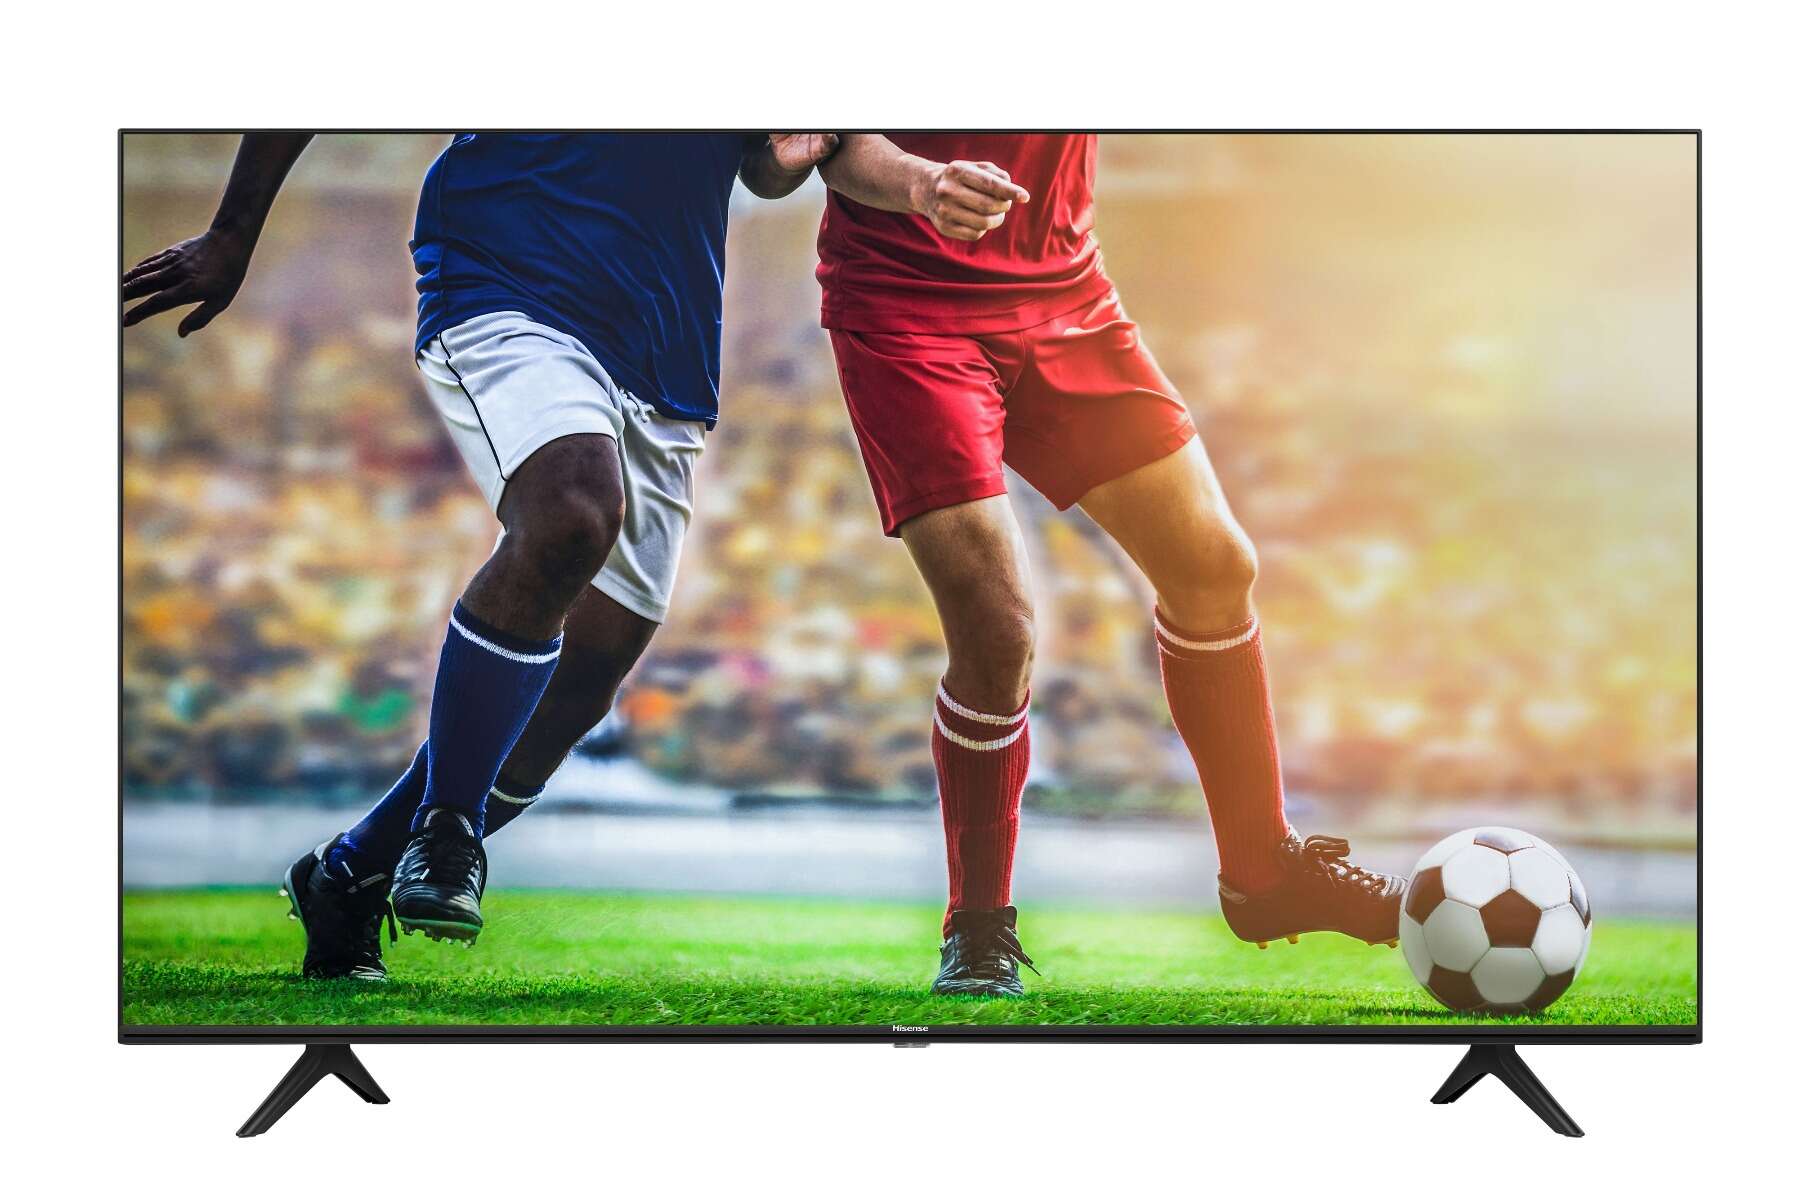 Hisense 65a7100f 4k ultra hd smart led tv, 164 cm (64,5"), hdr